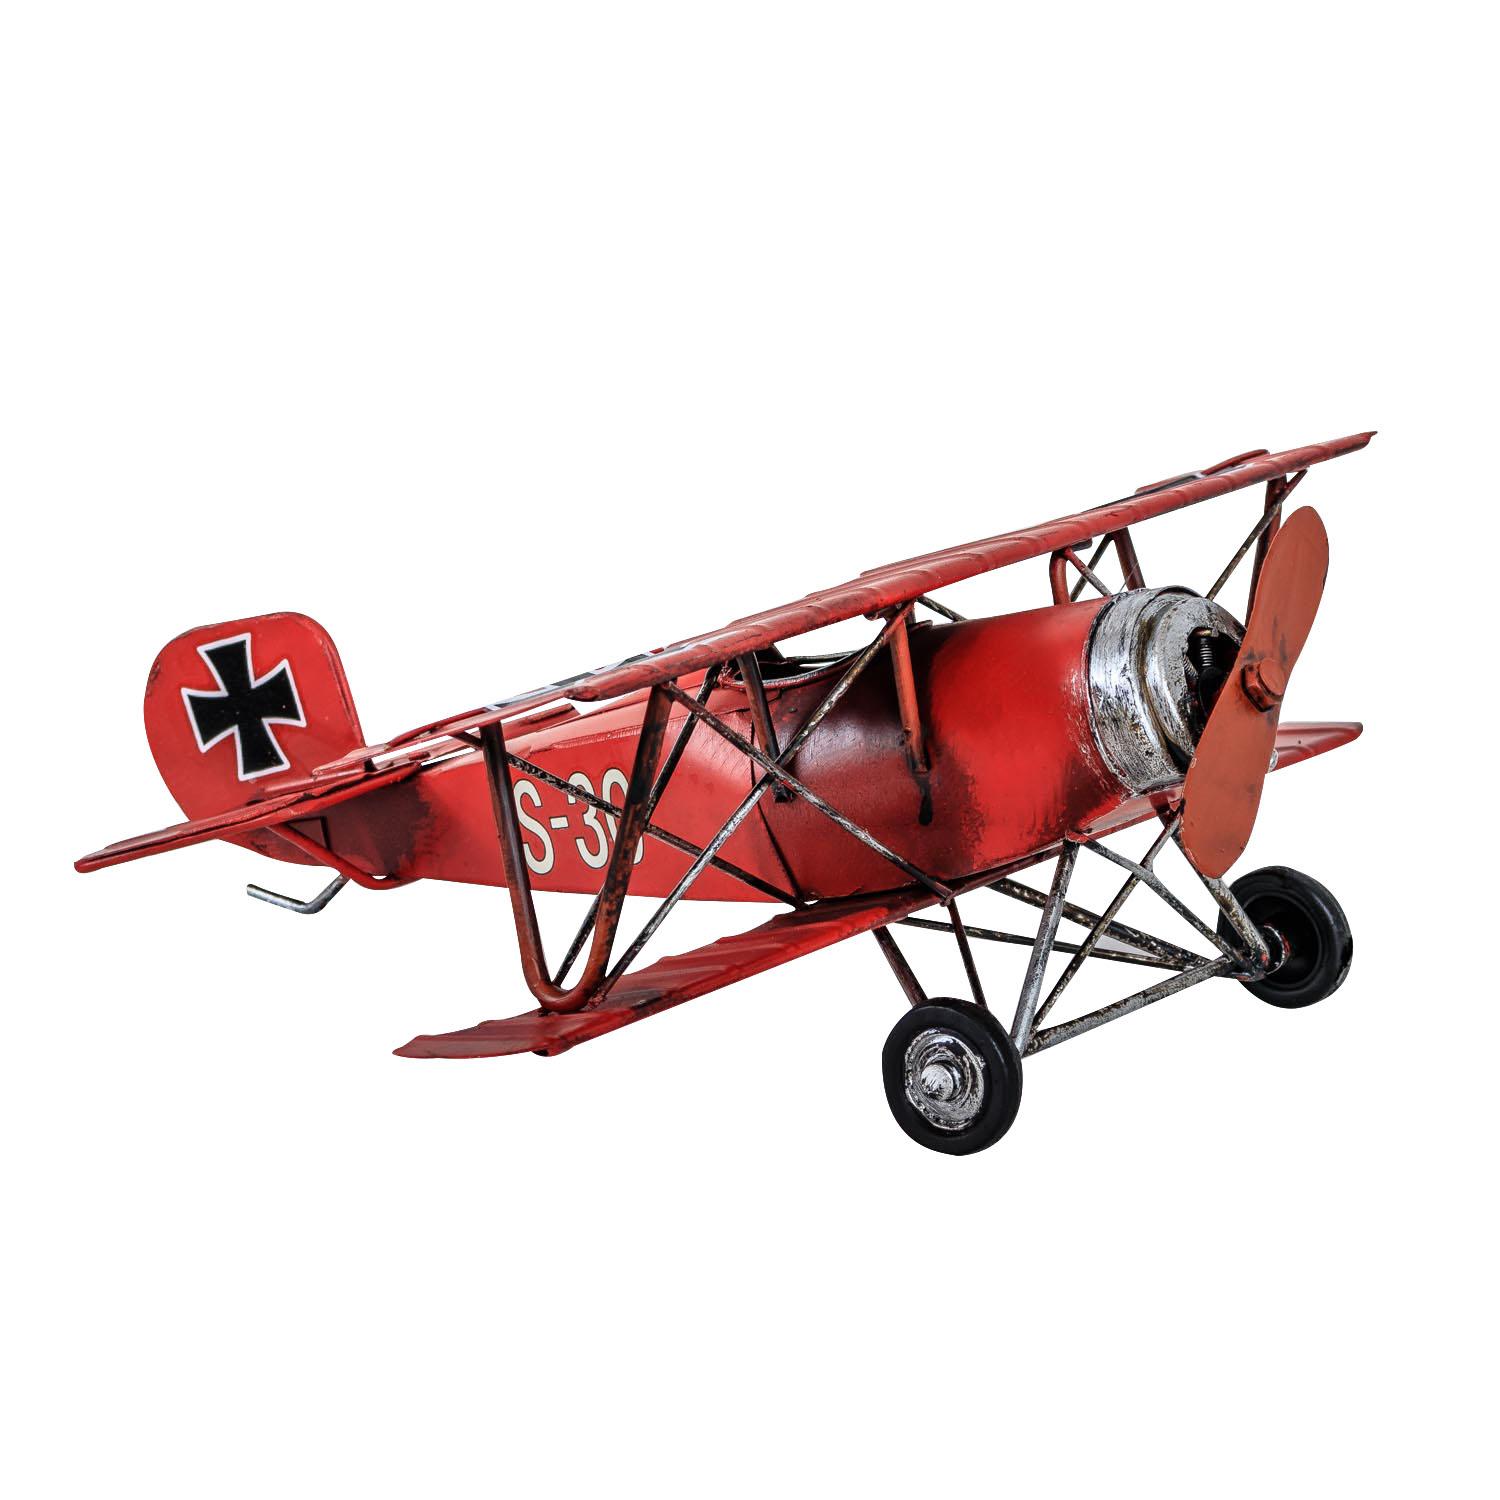 rode baron vliegtuigmodel metaal antieke stijl | Nederland